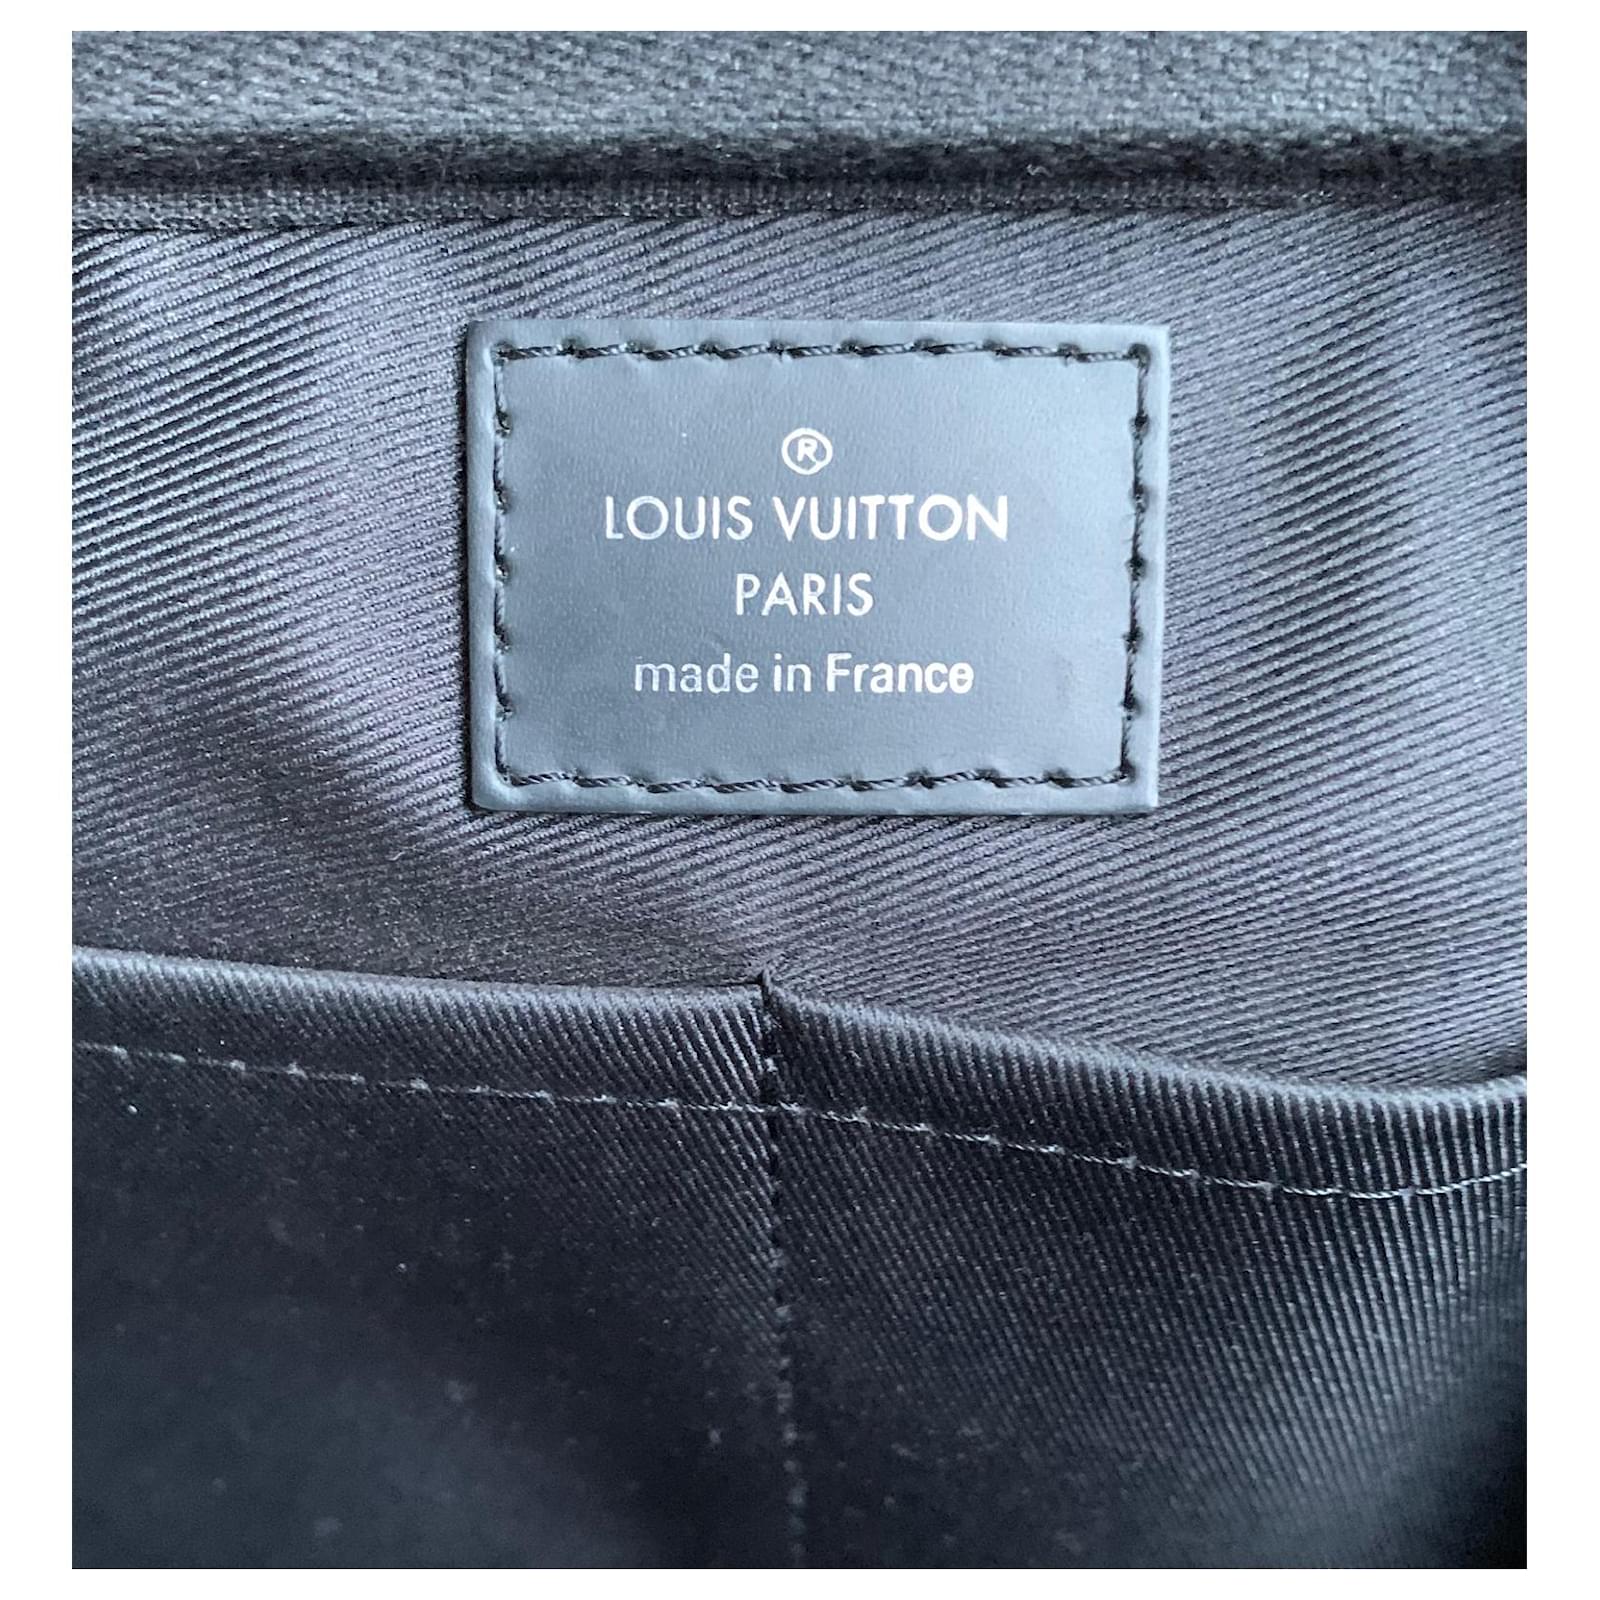 Manie Outlet - Marsupio Louis Vuitton Il prezzo è 130€